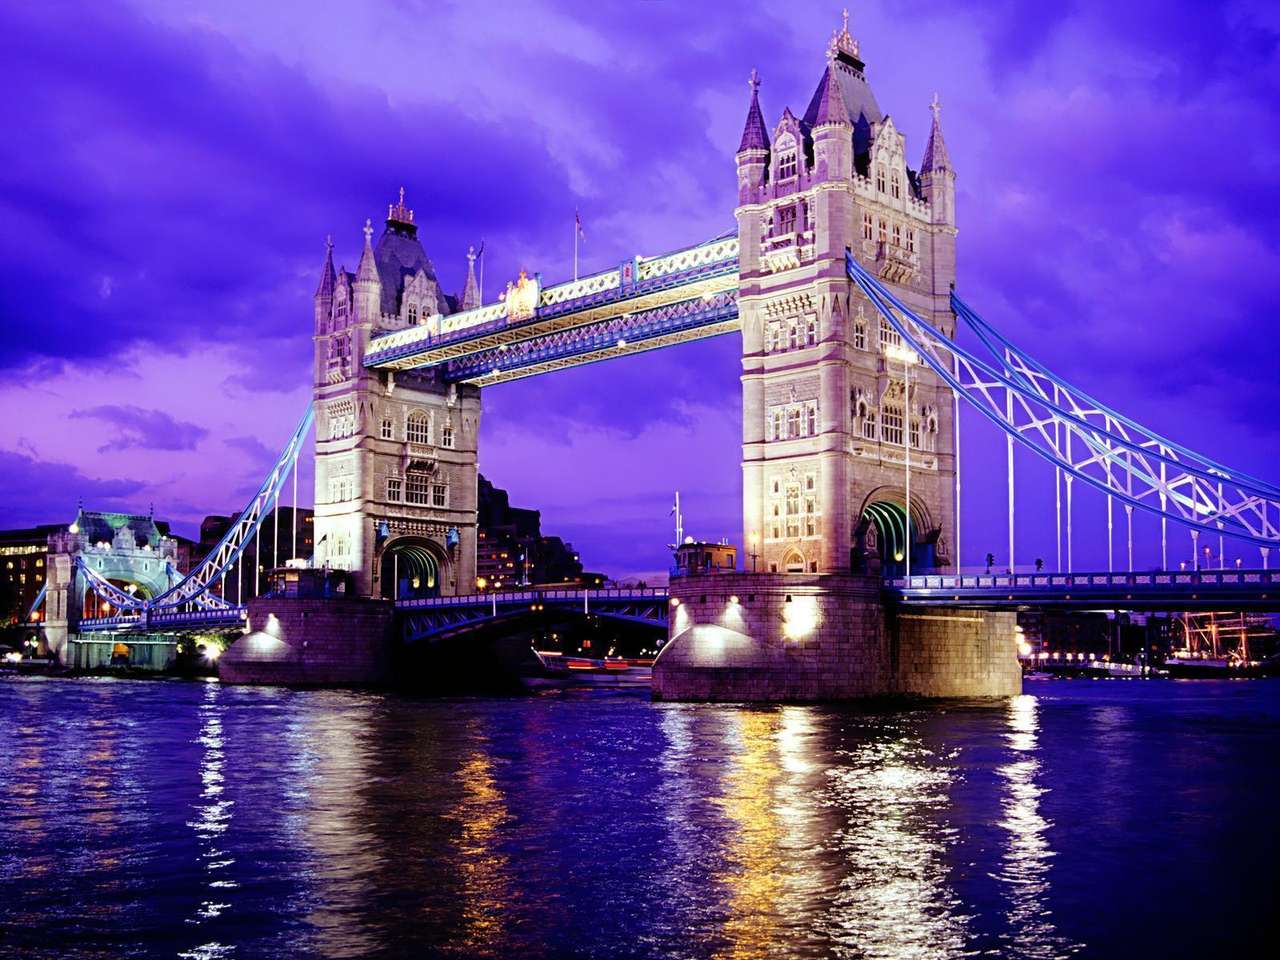 De toren van Londen legpuzzel online